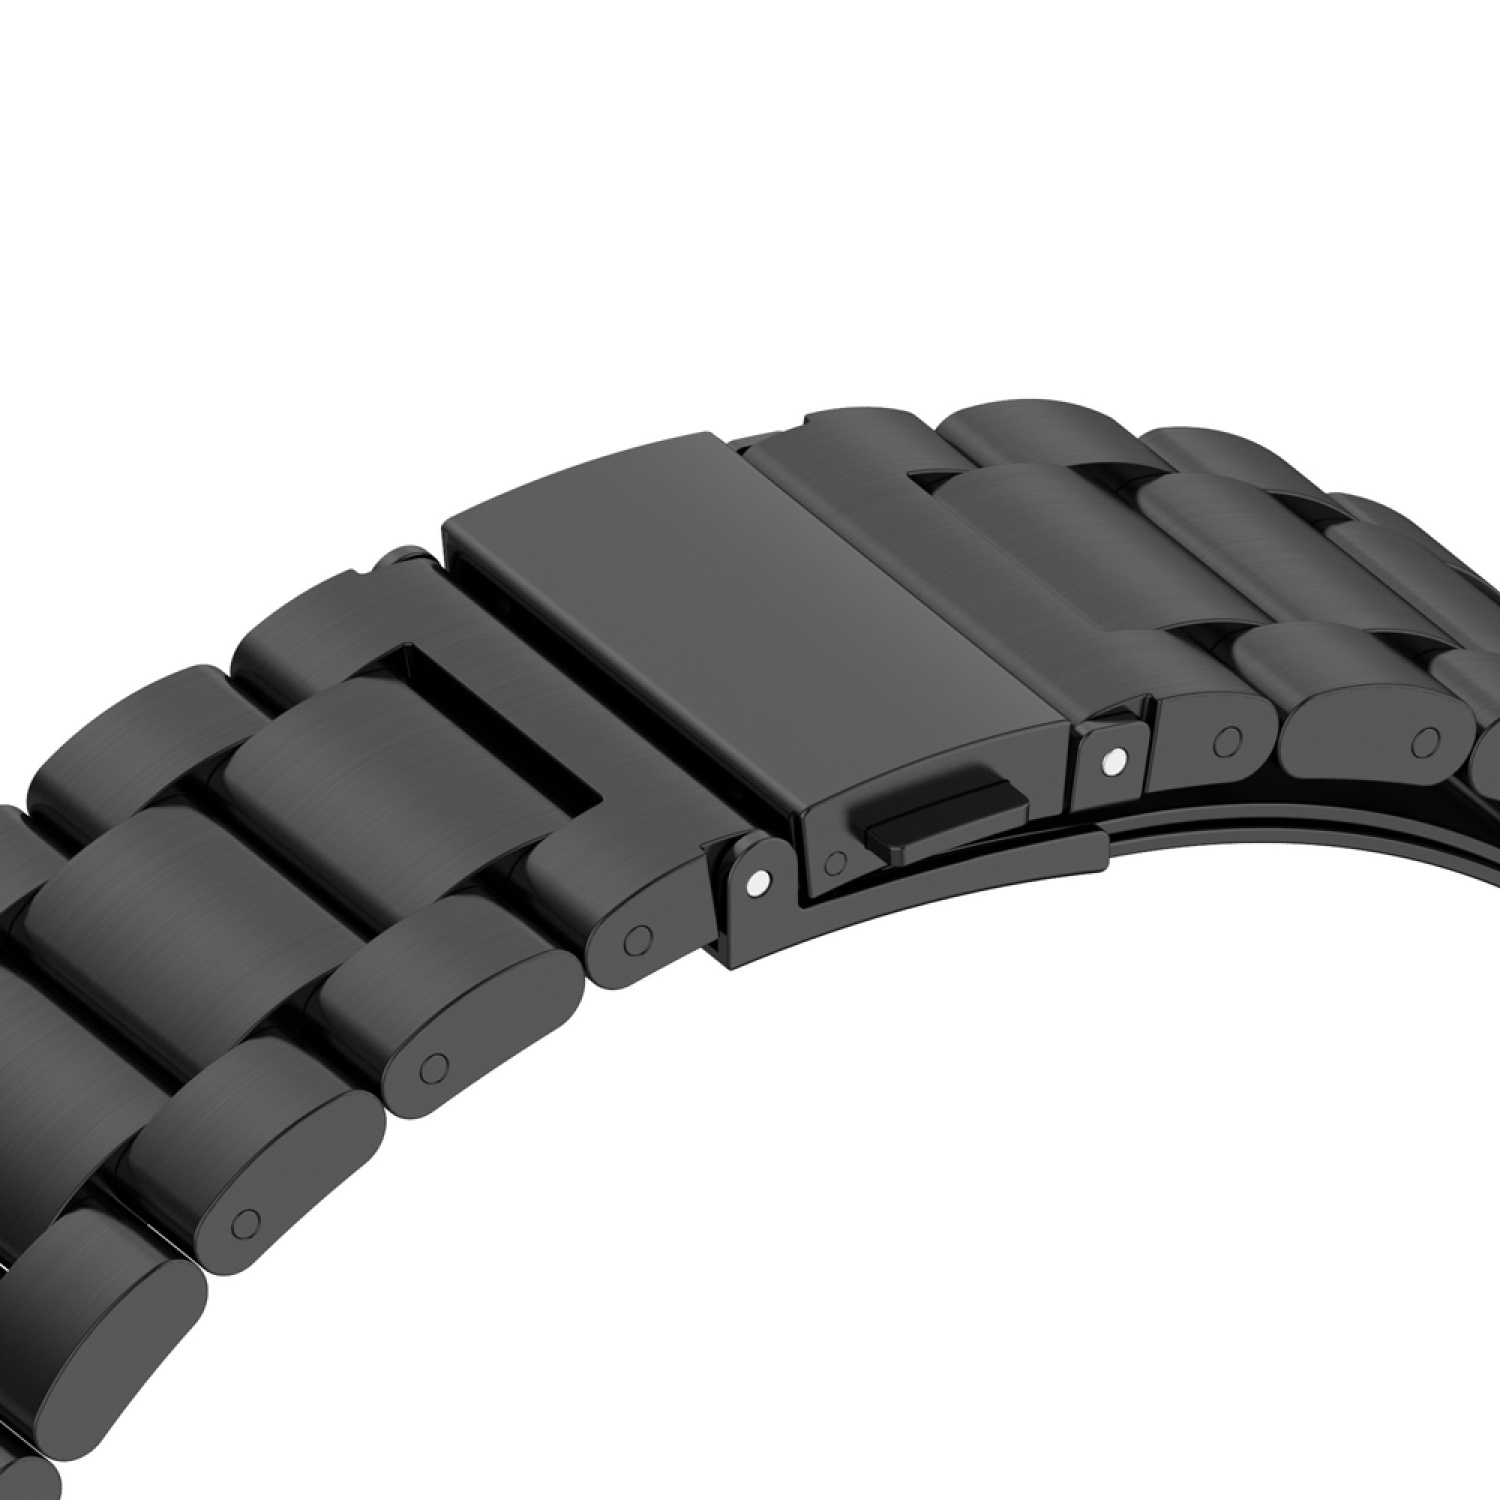 DESIGN KÖNIG Grau Ersatzband, 3 Watch 46mm, GT Huawei, Sportarmband,